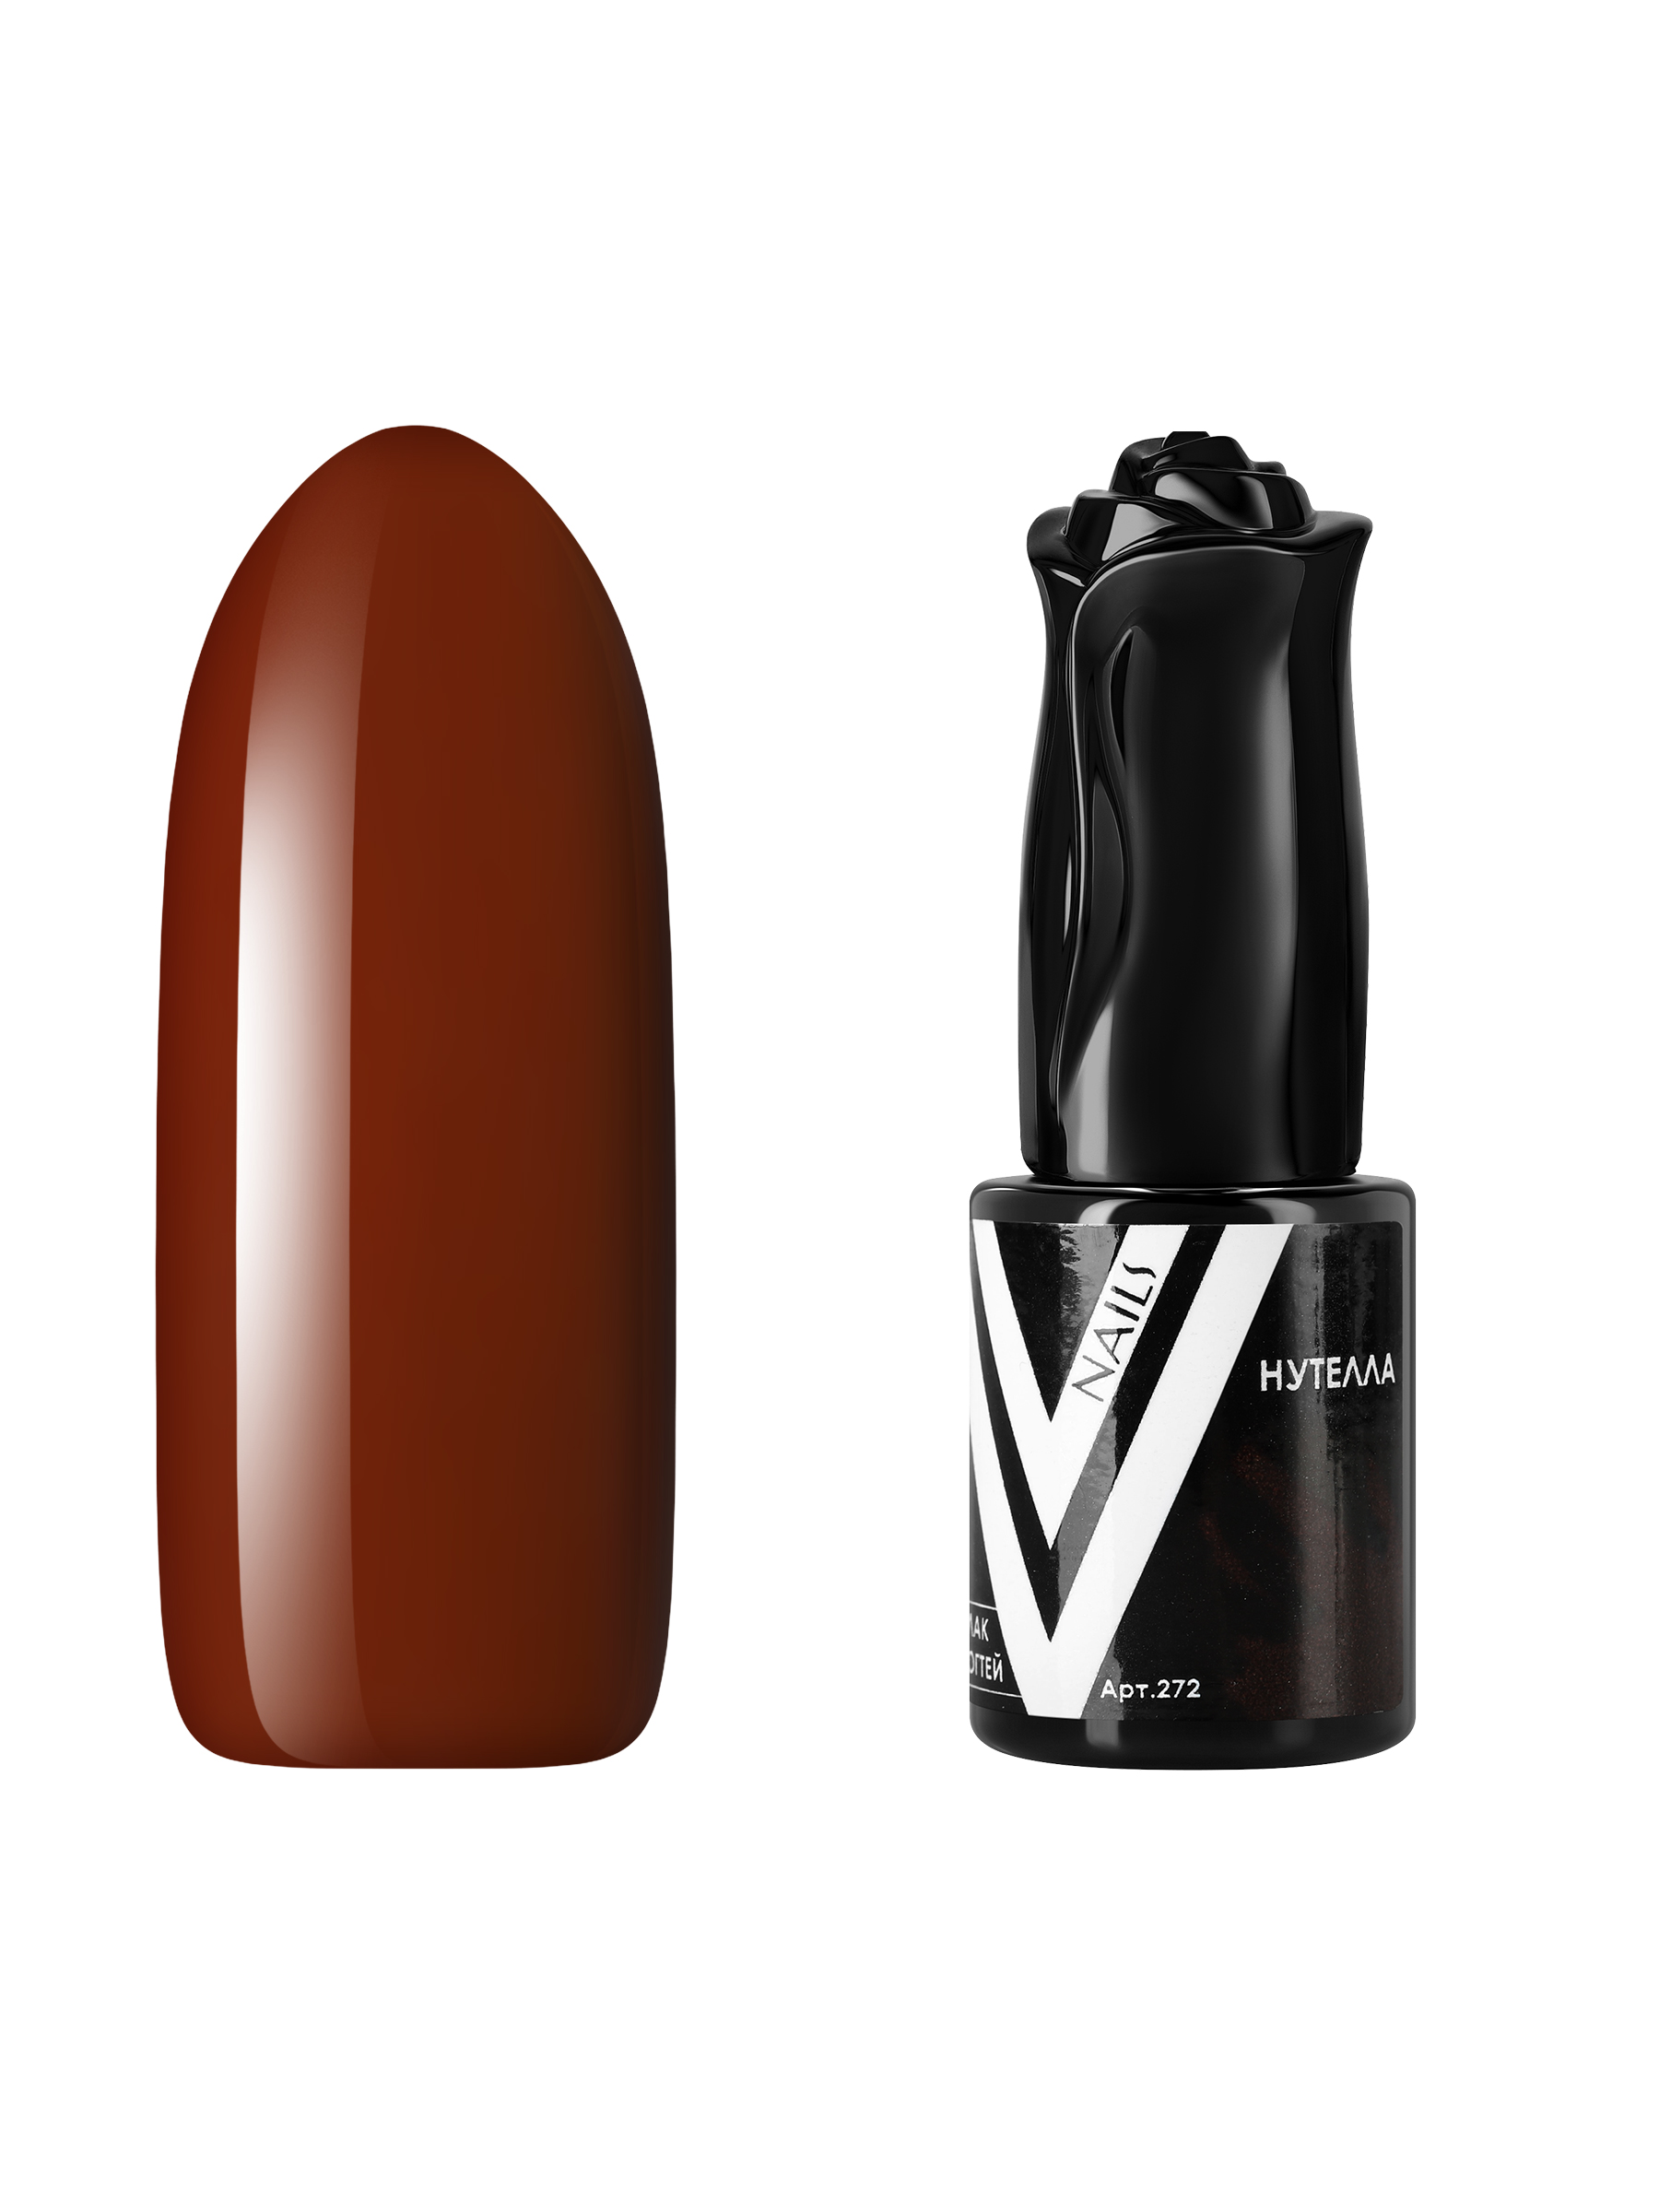 Гель-лак для ногтей Vogue Nails плотный самовыравнивающийся, коричневый, 10 мл iva nails каучуковая база для гель лака alien glass